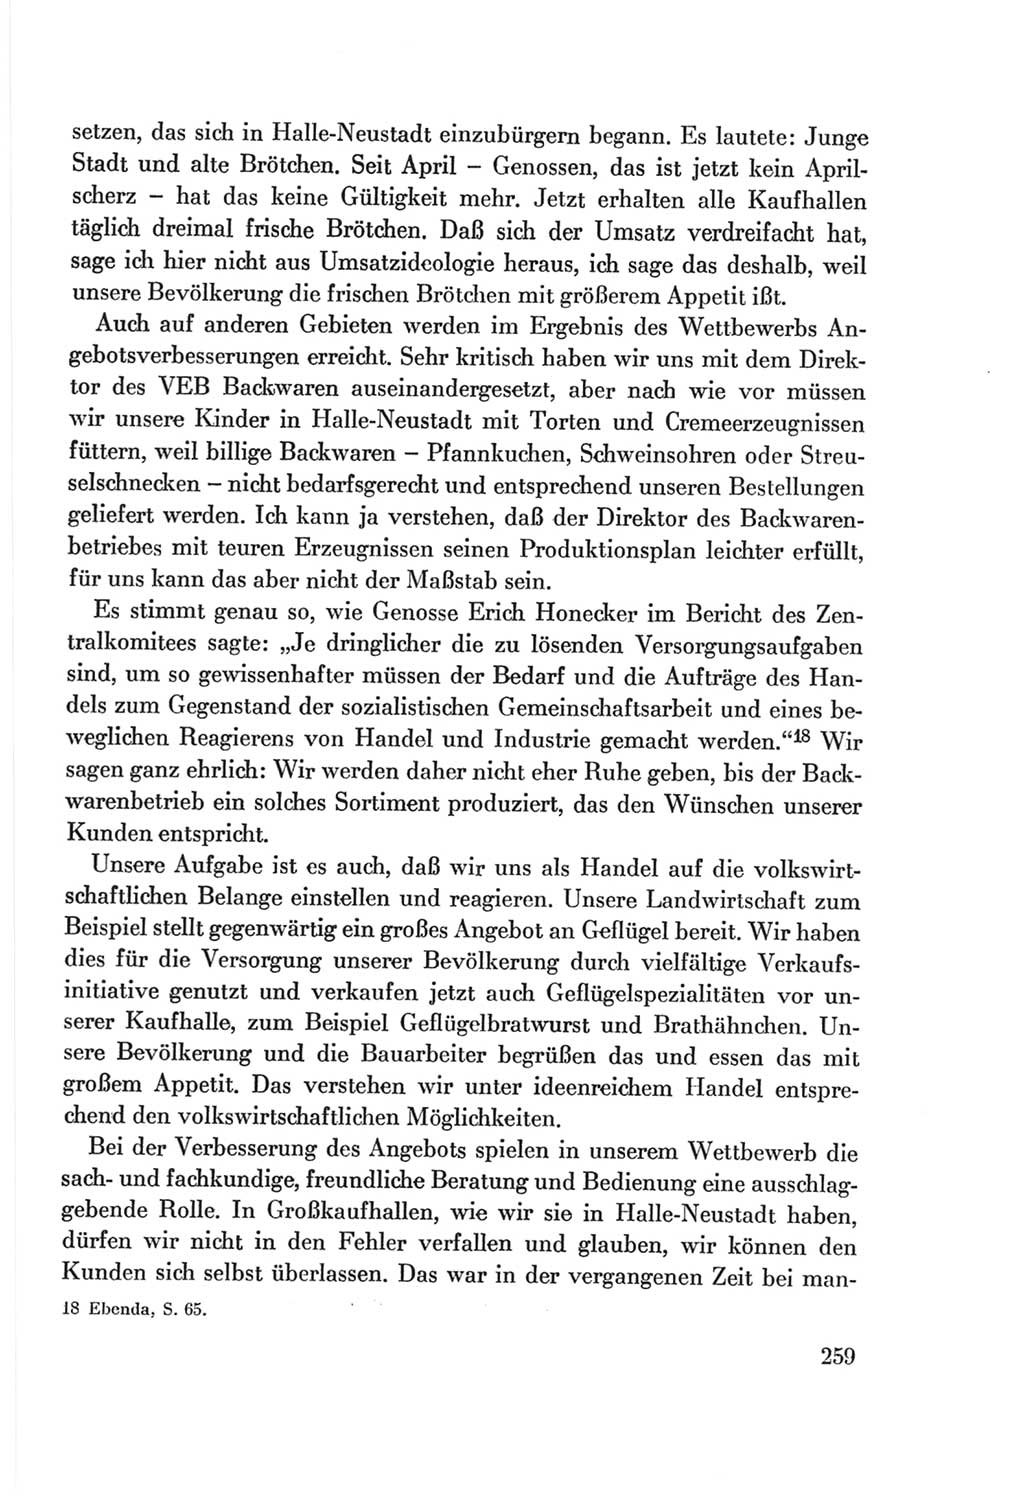 Protokoll der Verhandlungen des Ⅷ. Parteitages der Sozialistischen Einheitspartei Deutschlands (SED) [Deutsche Demokratische Republik (DDR)] 1971, Band 1, Seite 259 (Prot. Verh. Ⅷ. PT SED DDR 1971, Bd. 1, S. 259)